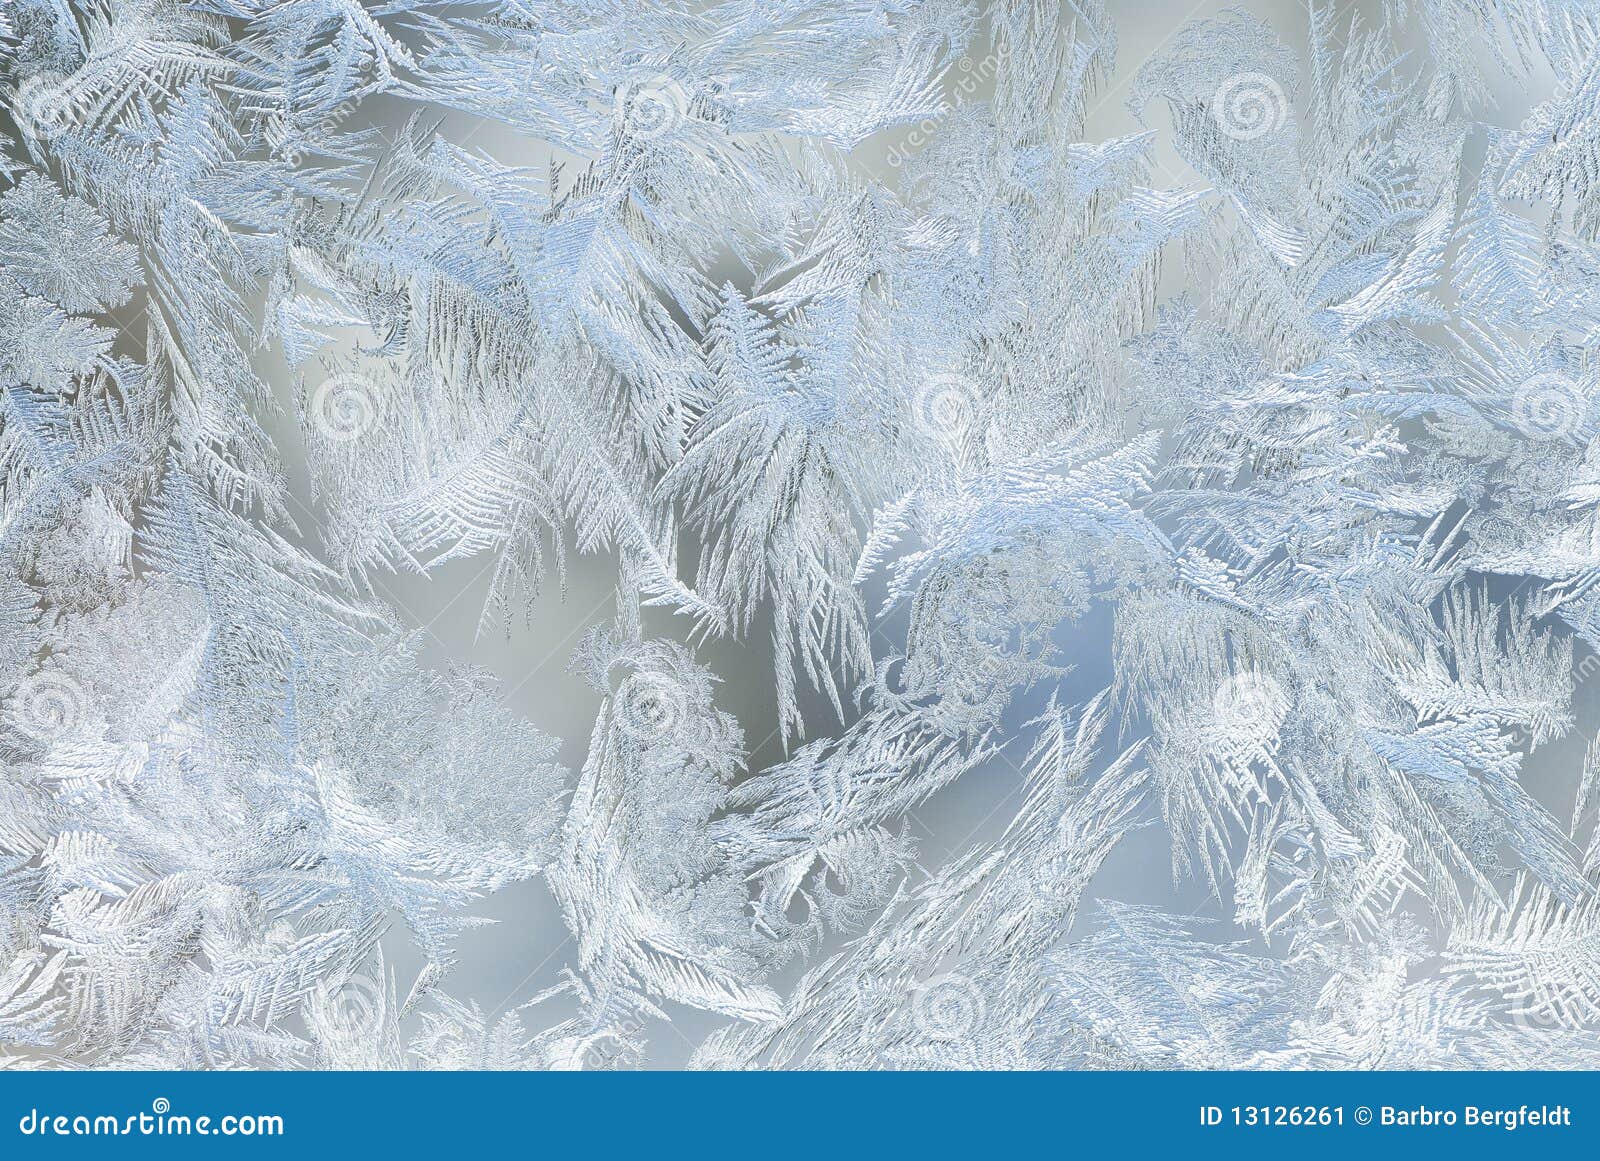 window ice crystals